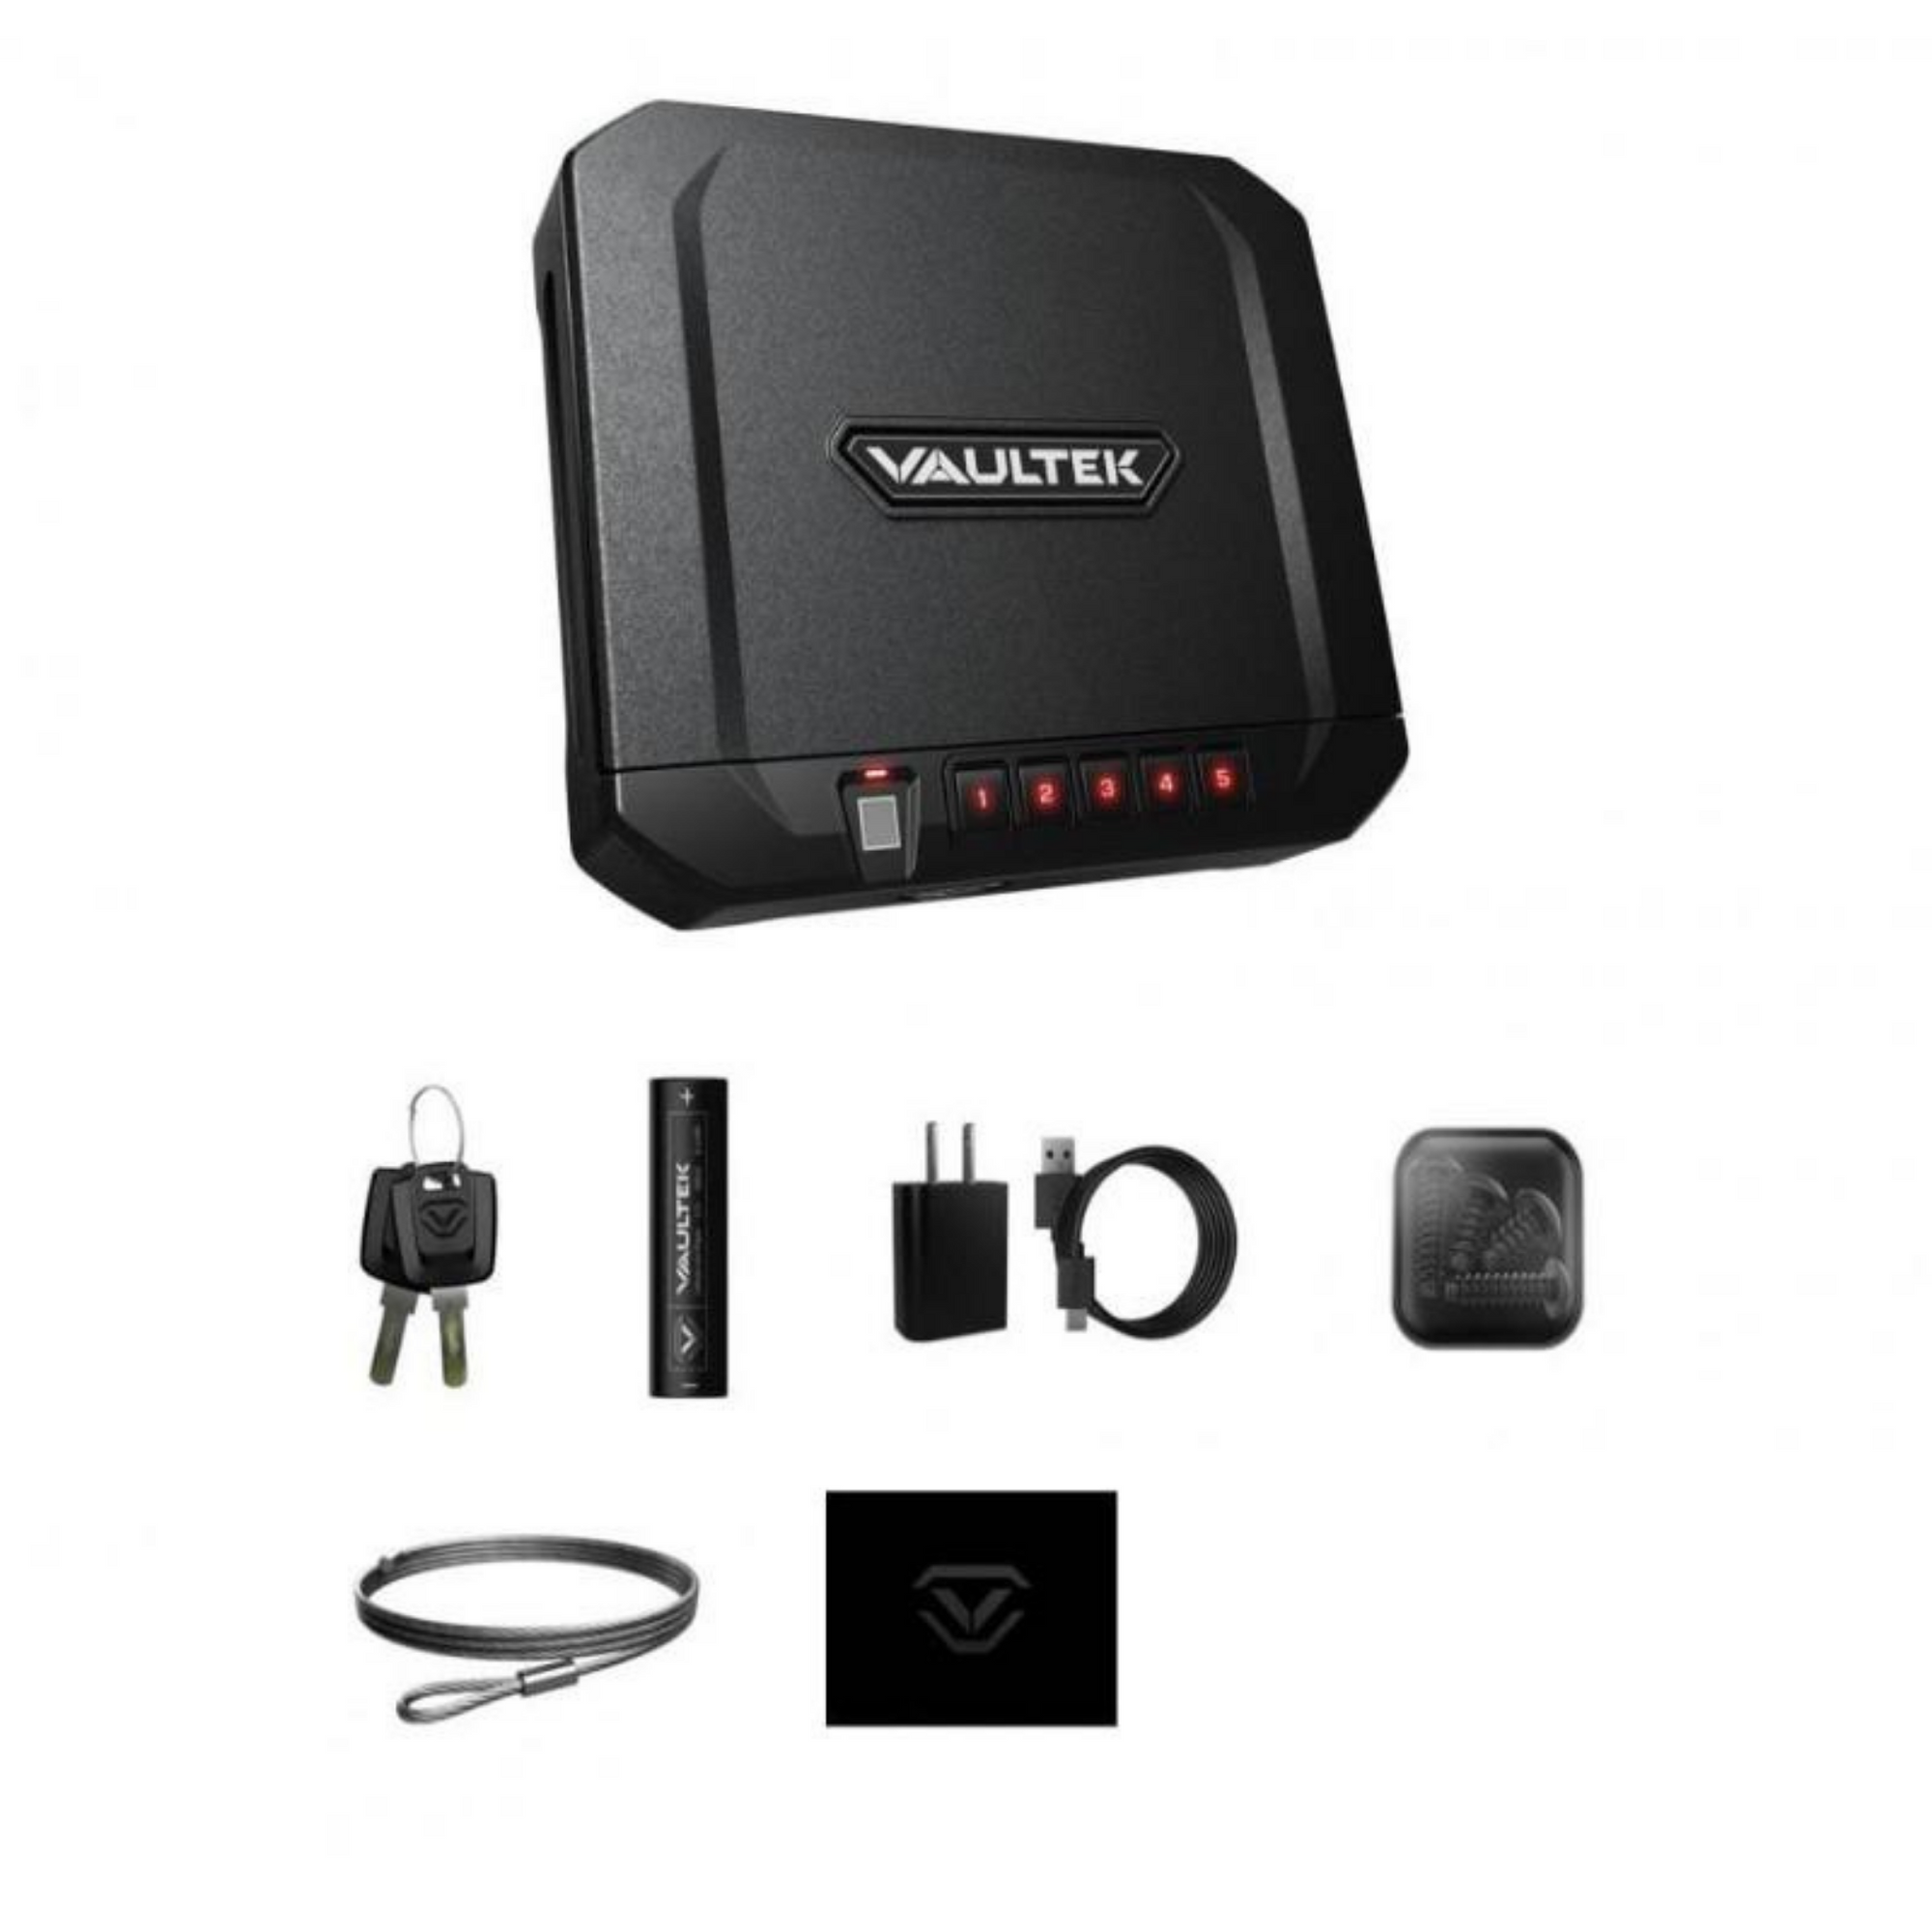 VAULTEK | VT10i - Bluetooth - Biometric | Liberty Safe Norcal.